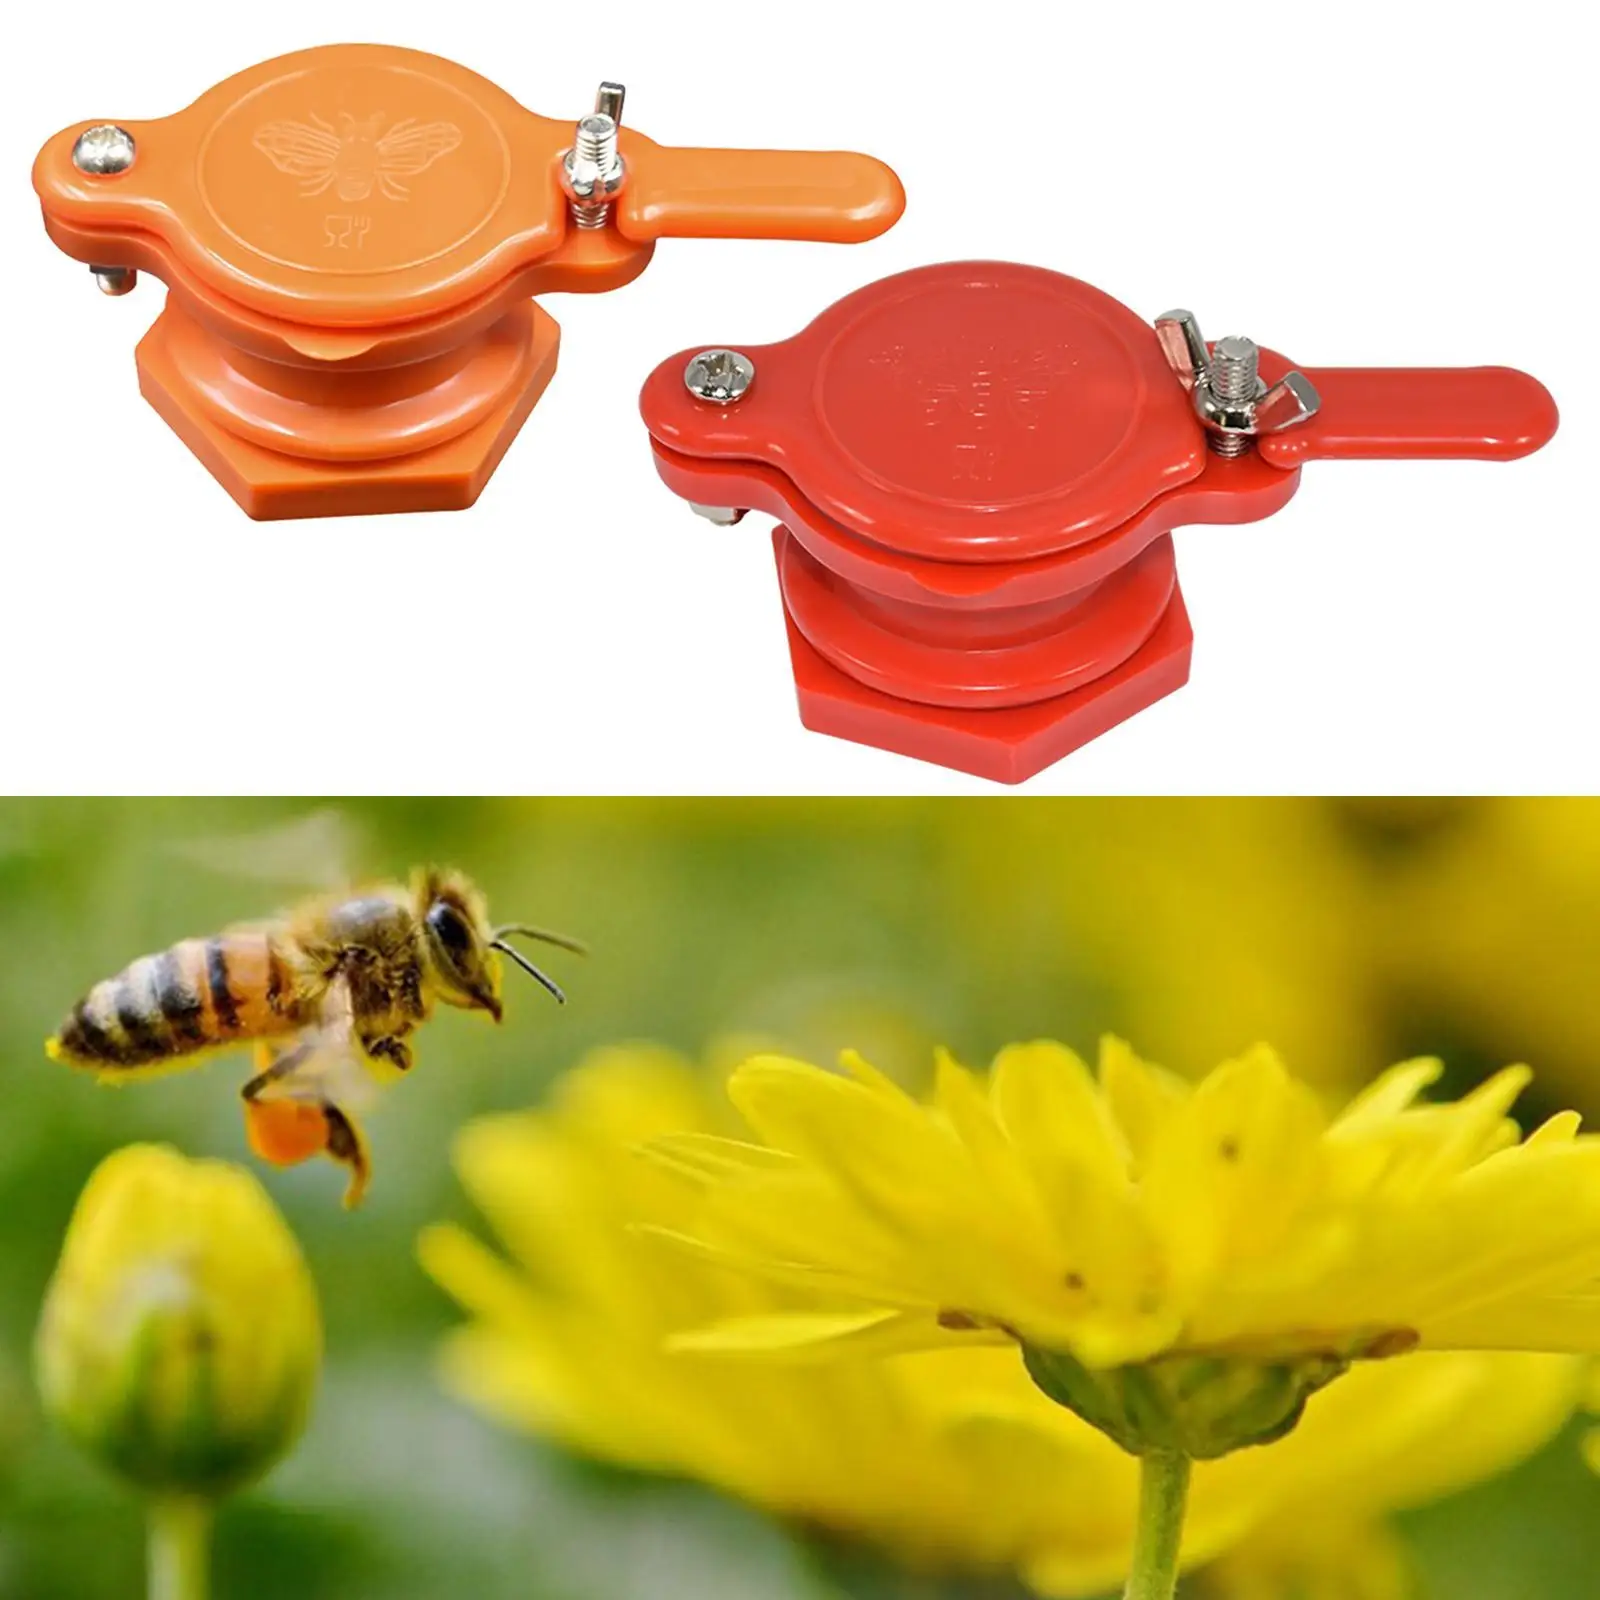  Gate Valve  Extractor Tap Equipment Beekeeping Supplies for Beekeeper